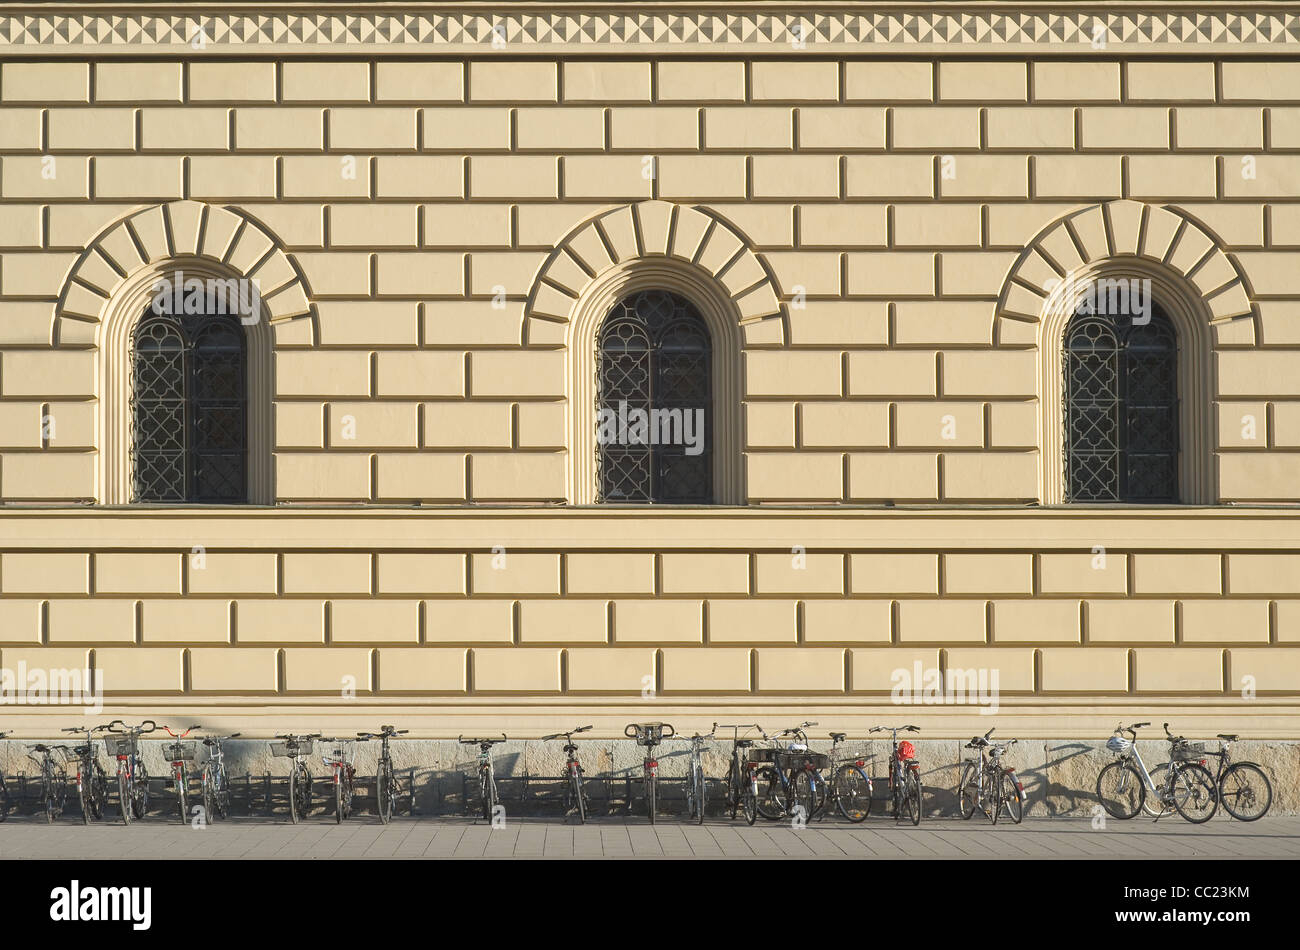 Stile rinascimentale italiano architettura con le biciclette parcheggiate Foto Stock